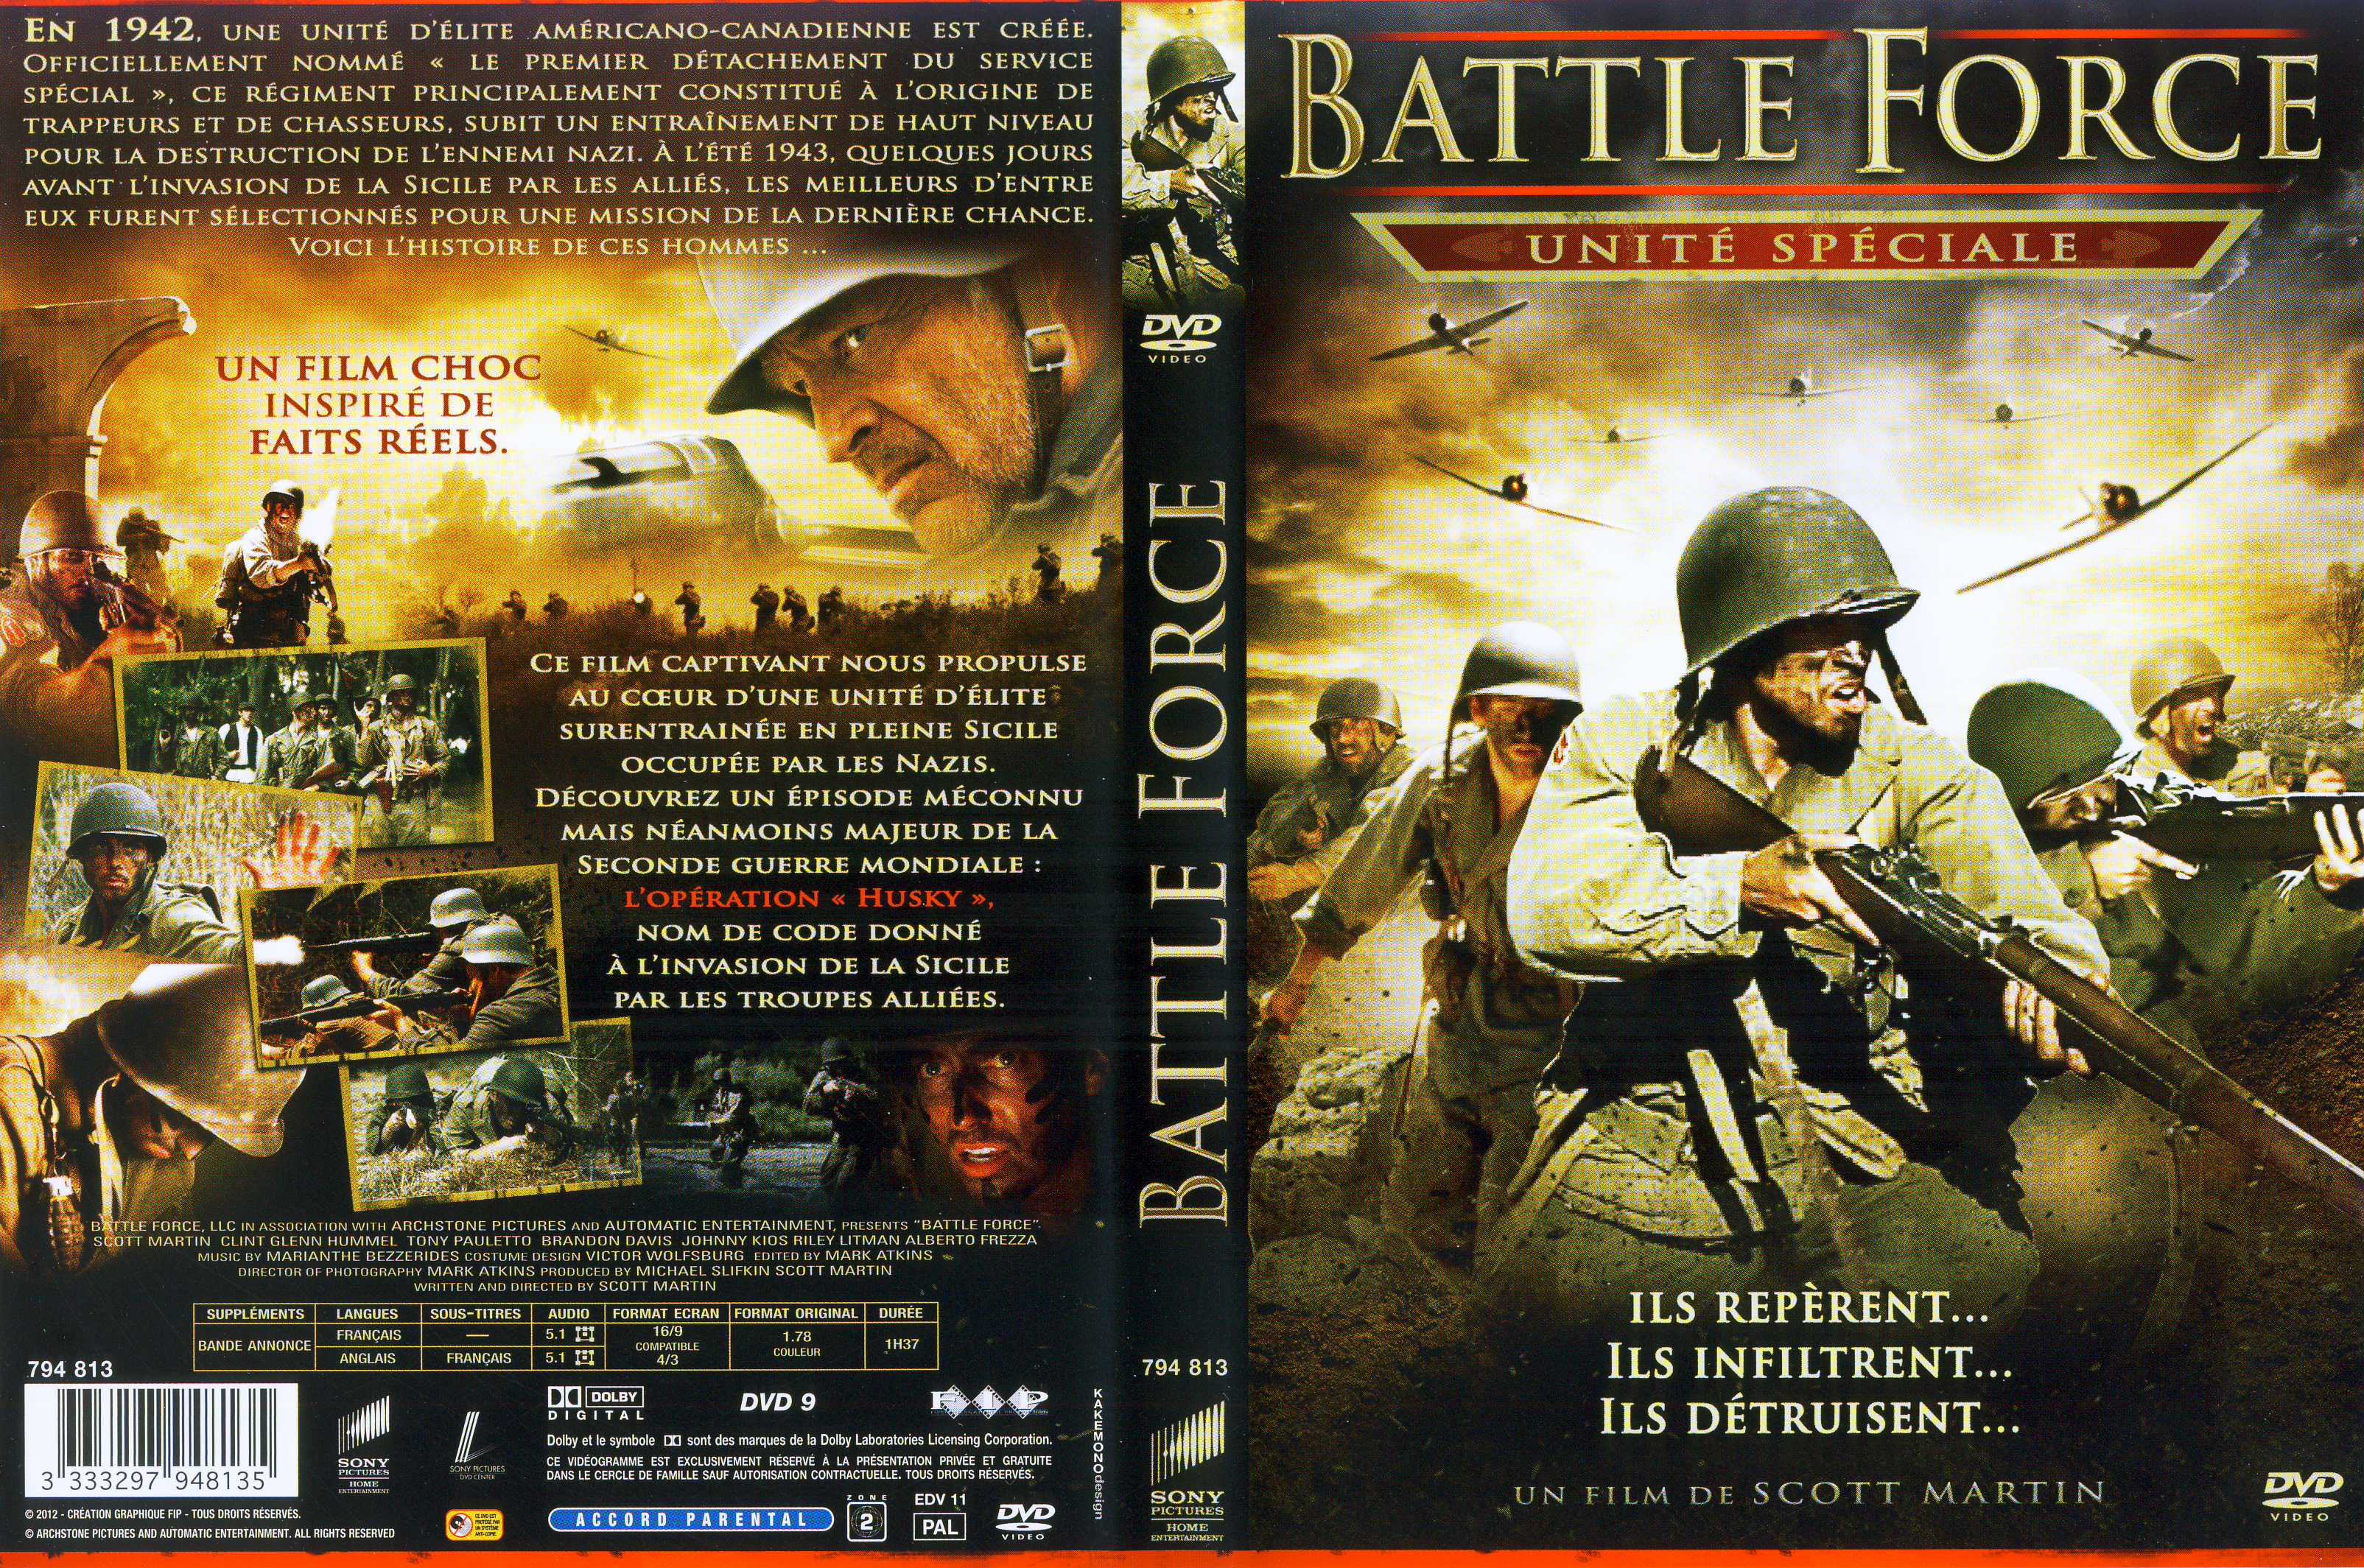 Jaquette DVD Battle Force, unit spciale